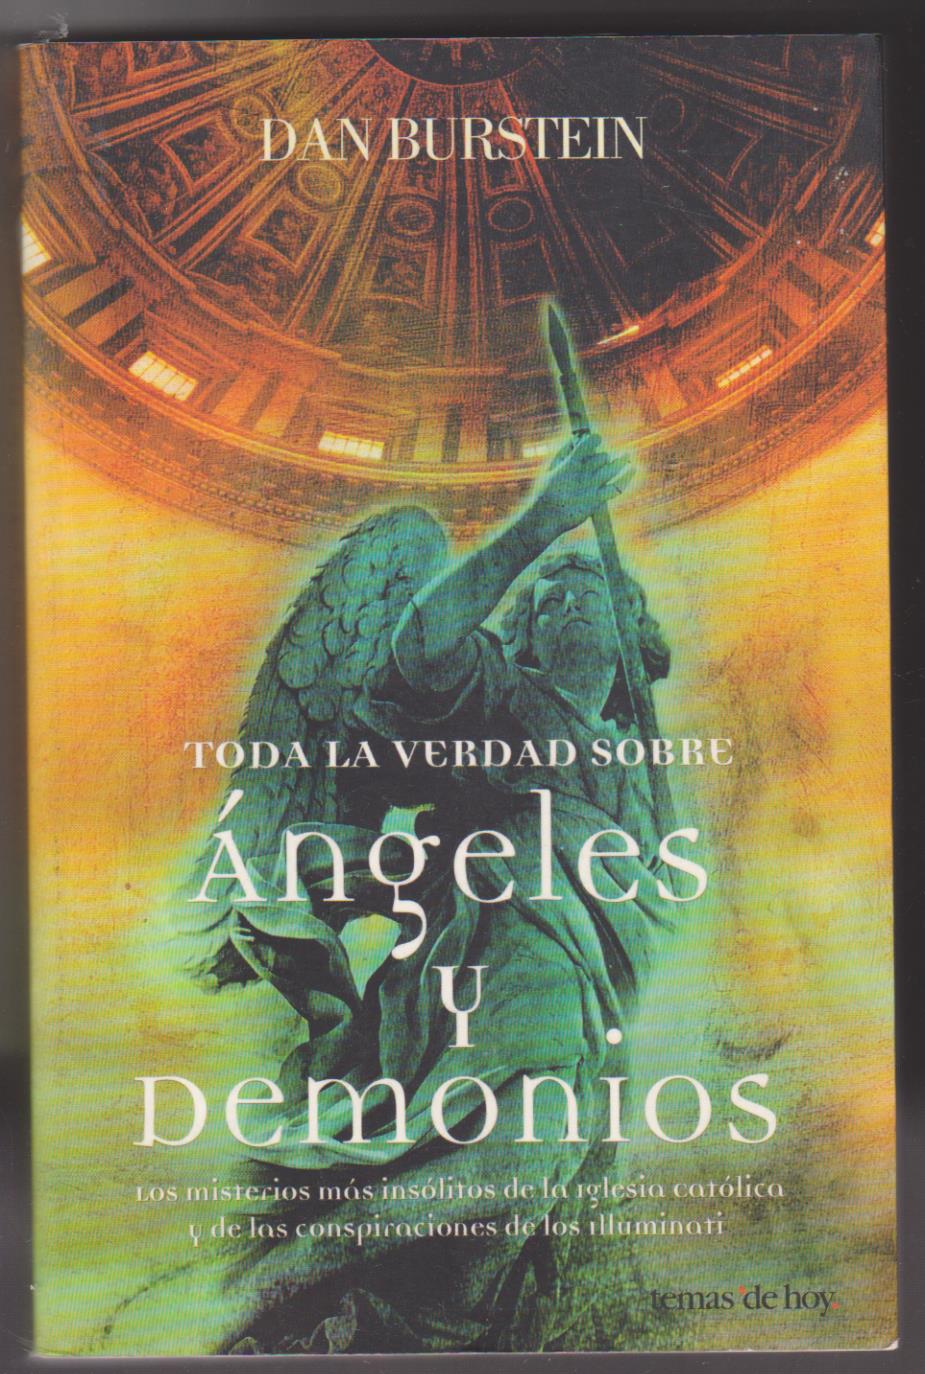 Dan Burstein. Toda la verdad sobre Ángeles y Demonios. 1ª Edición Temas de Hoy 2005. SIN USAR